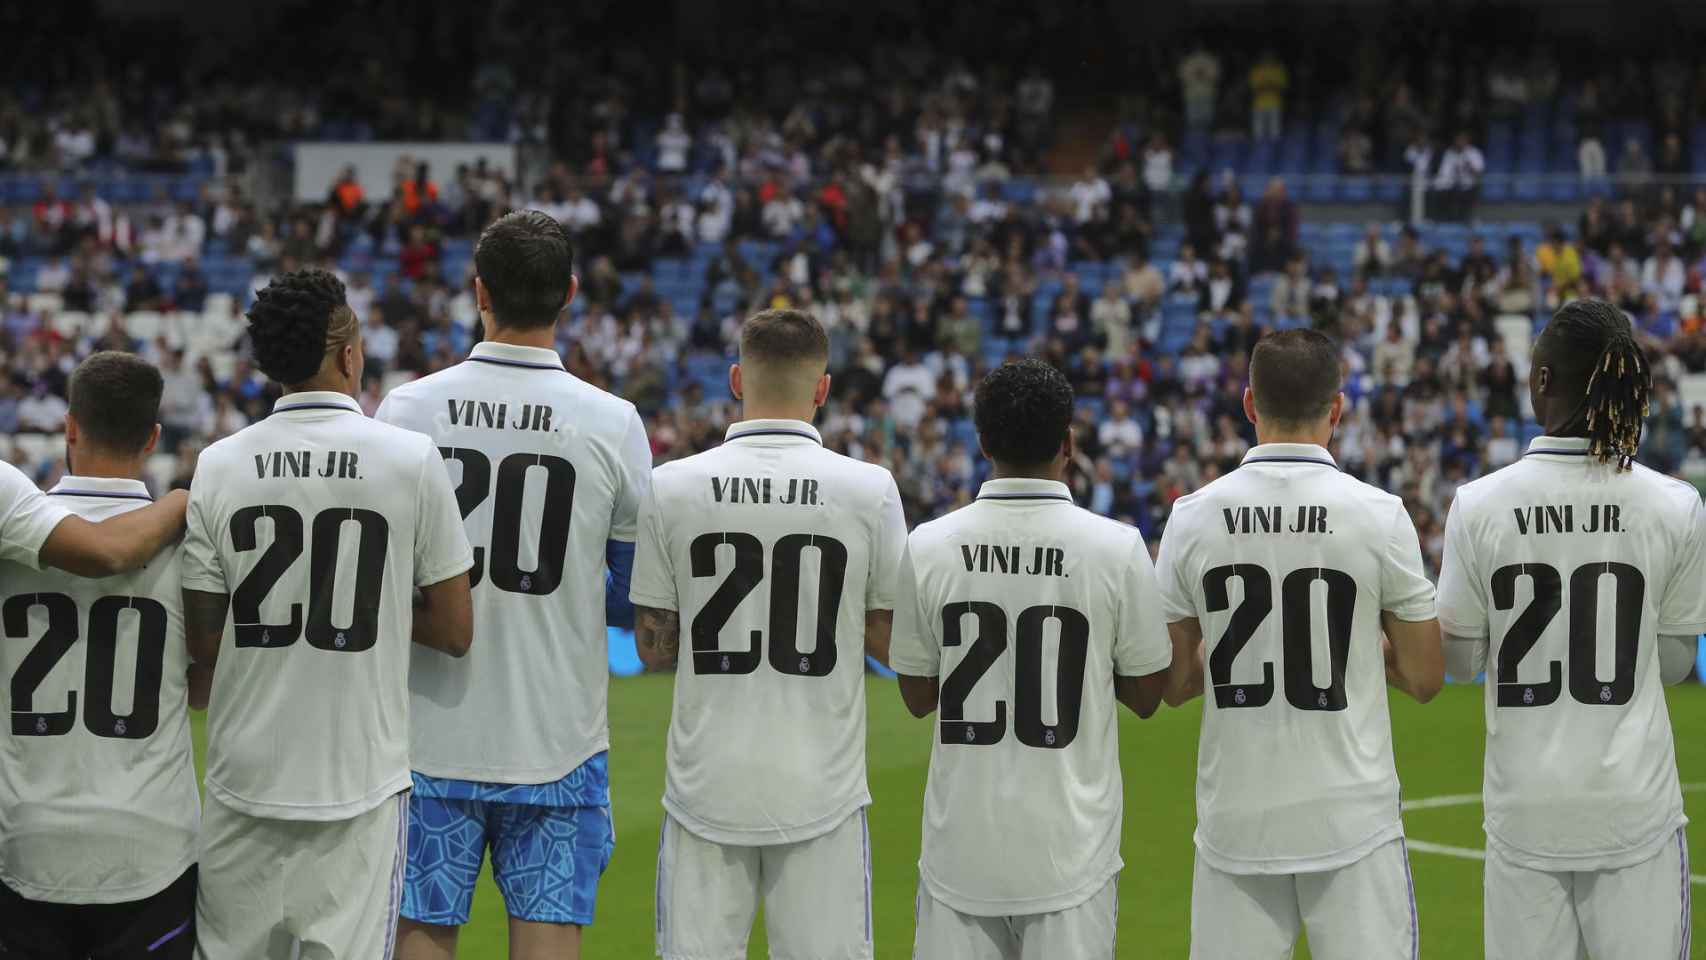 Los jugadores del Real Madrid llevan una camiseta de apoyo a Vinicius